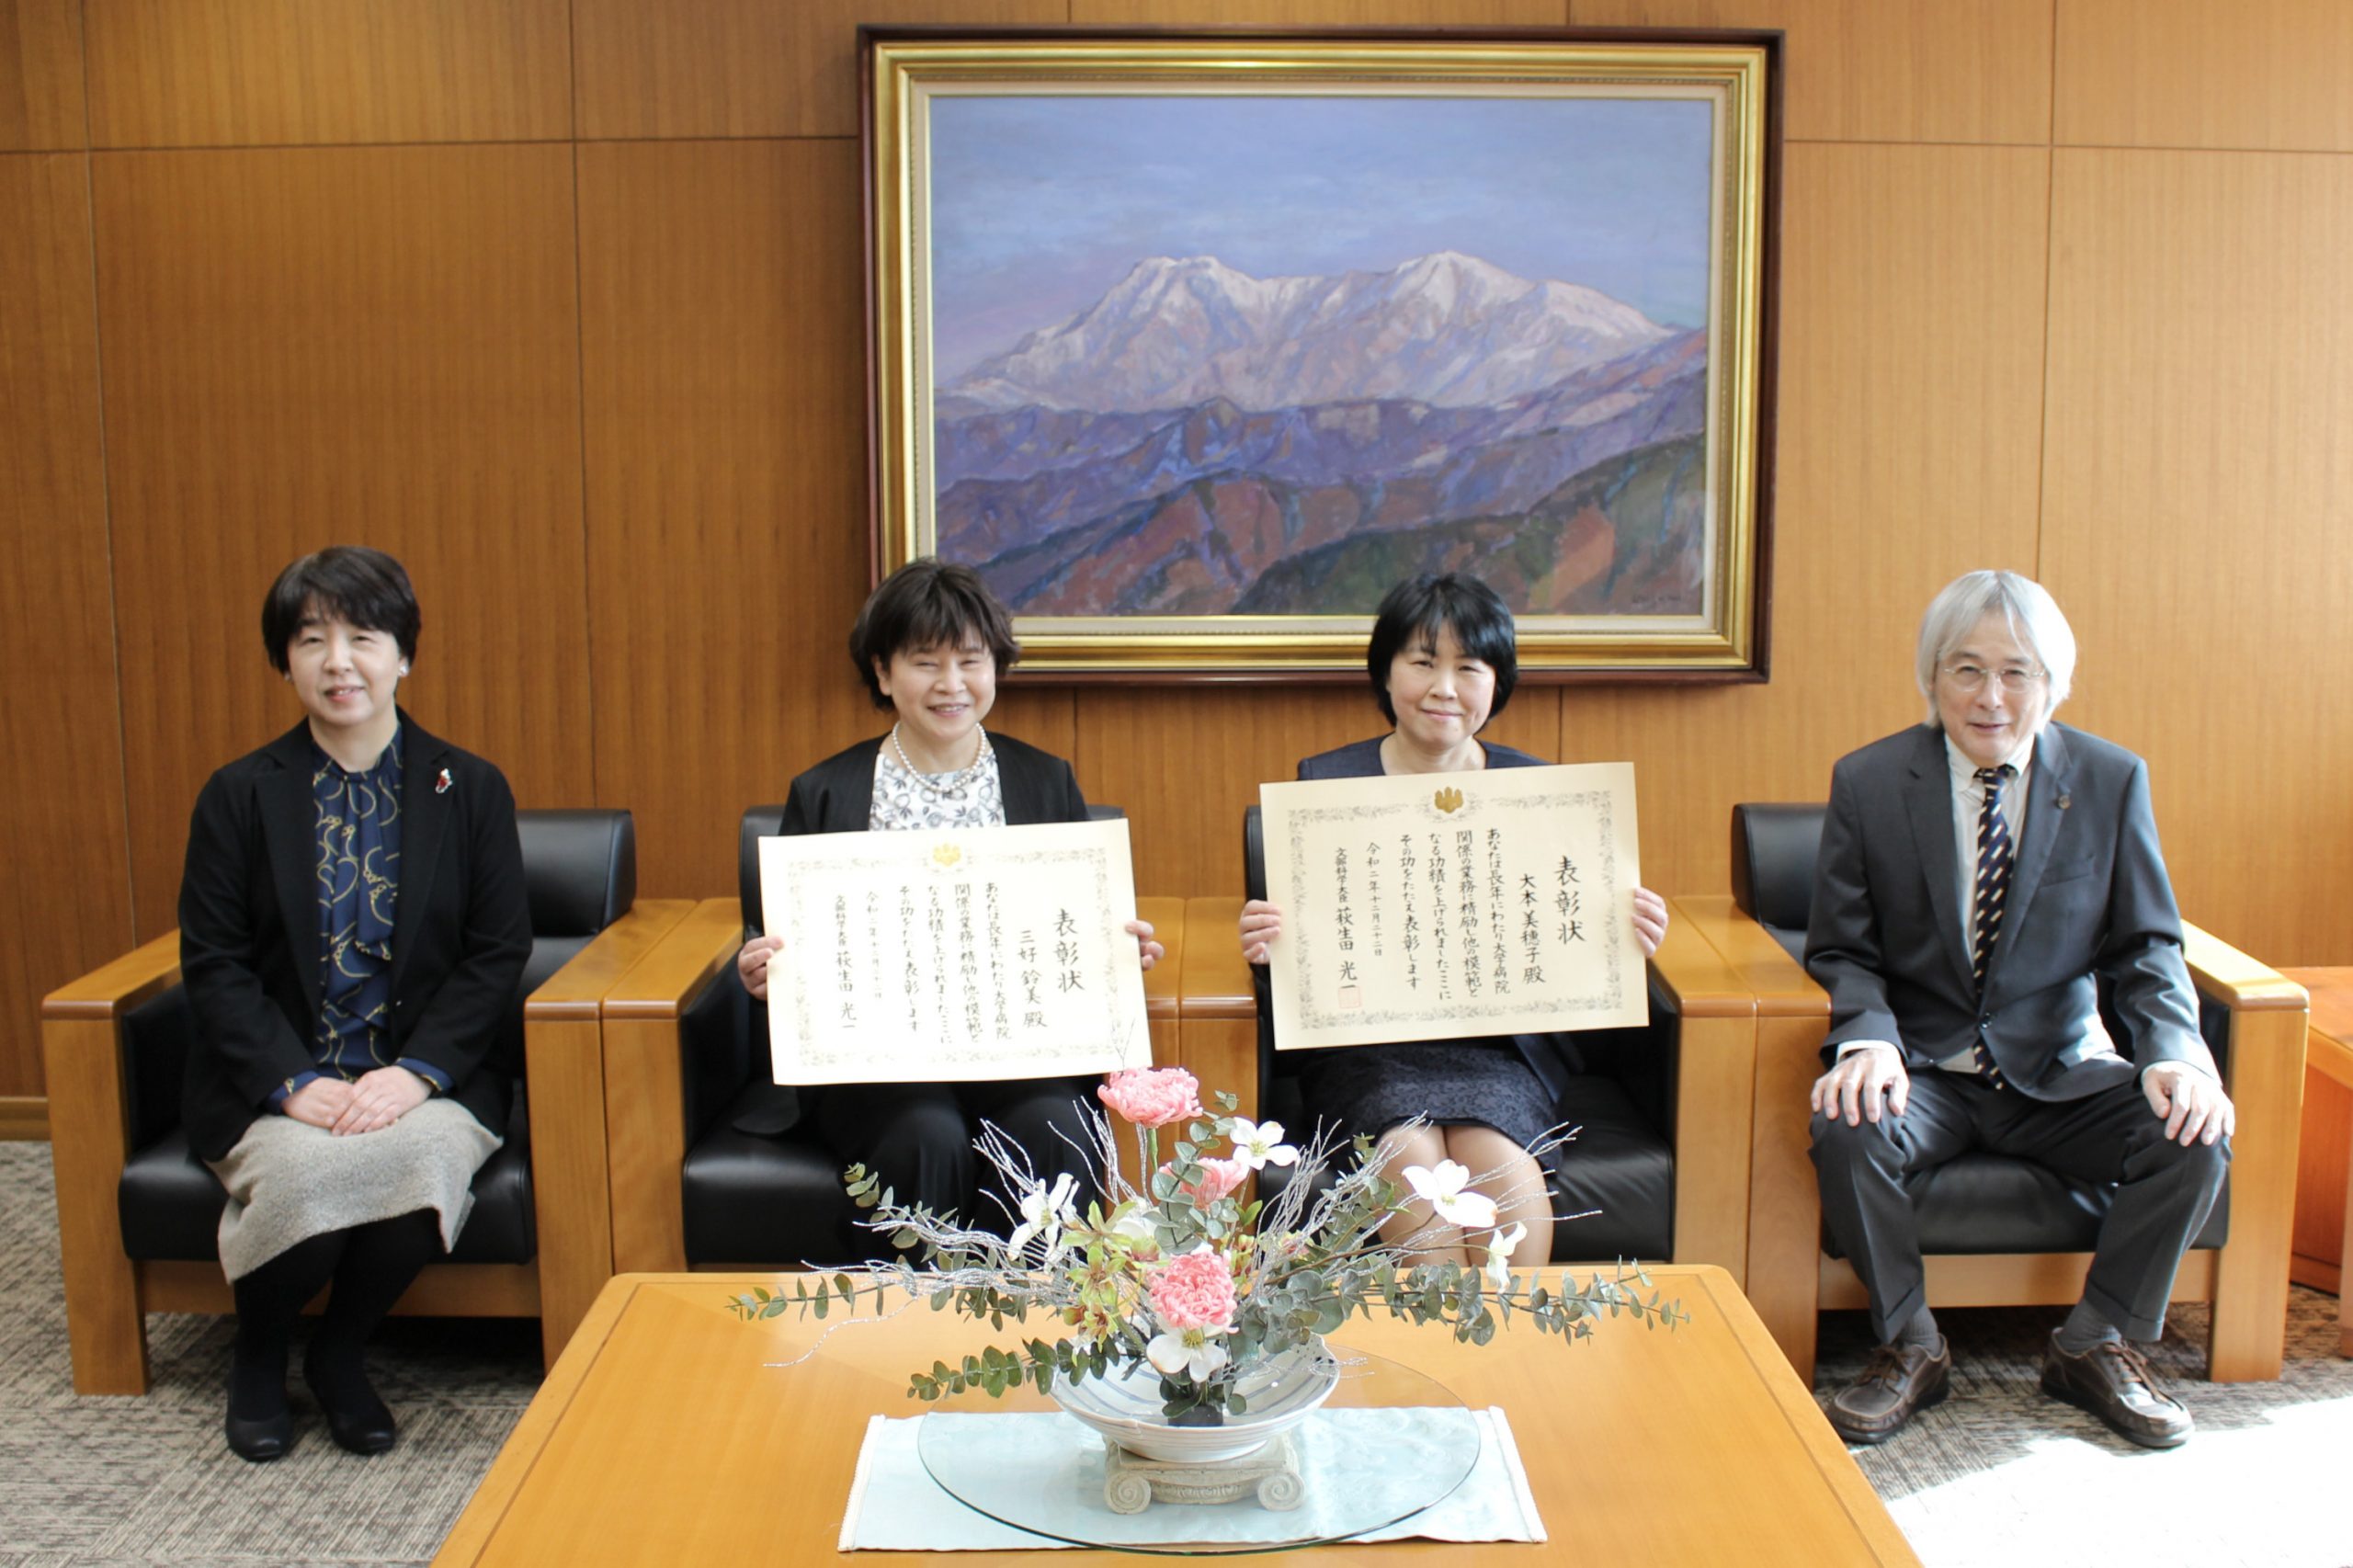 愛媛大学医学部附属病院の職員が医学教育等関係業務功労者として表彰されました